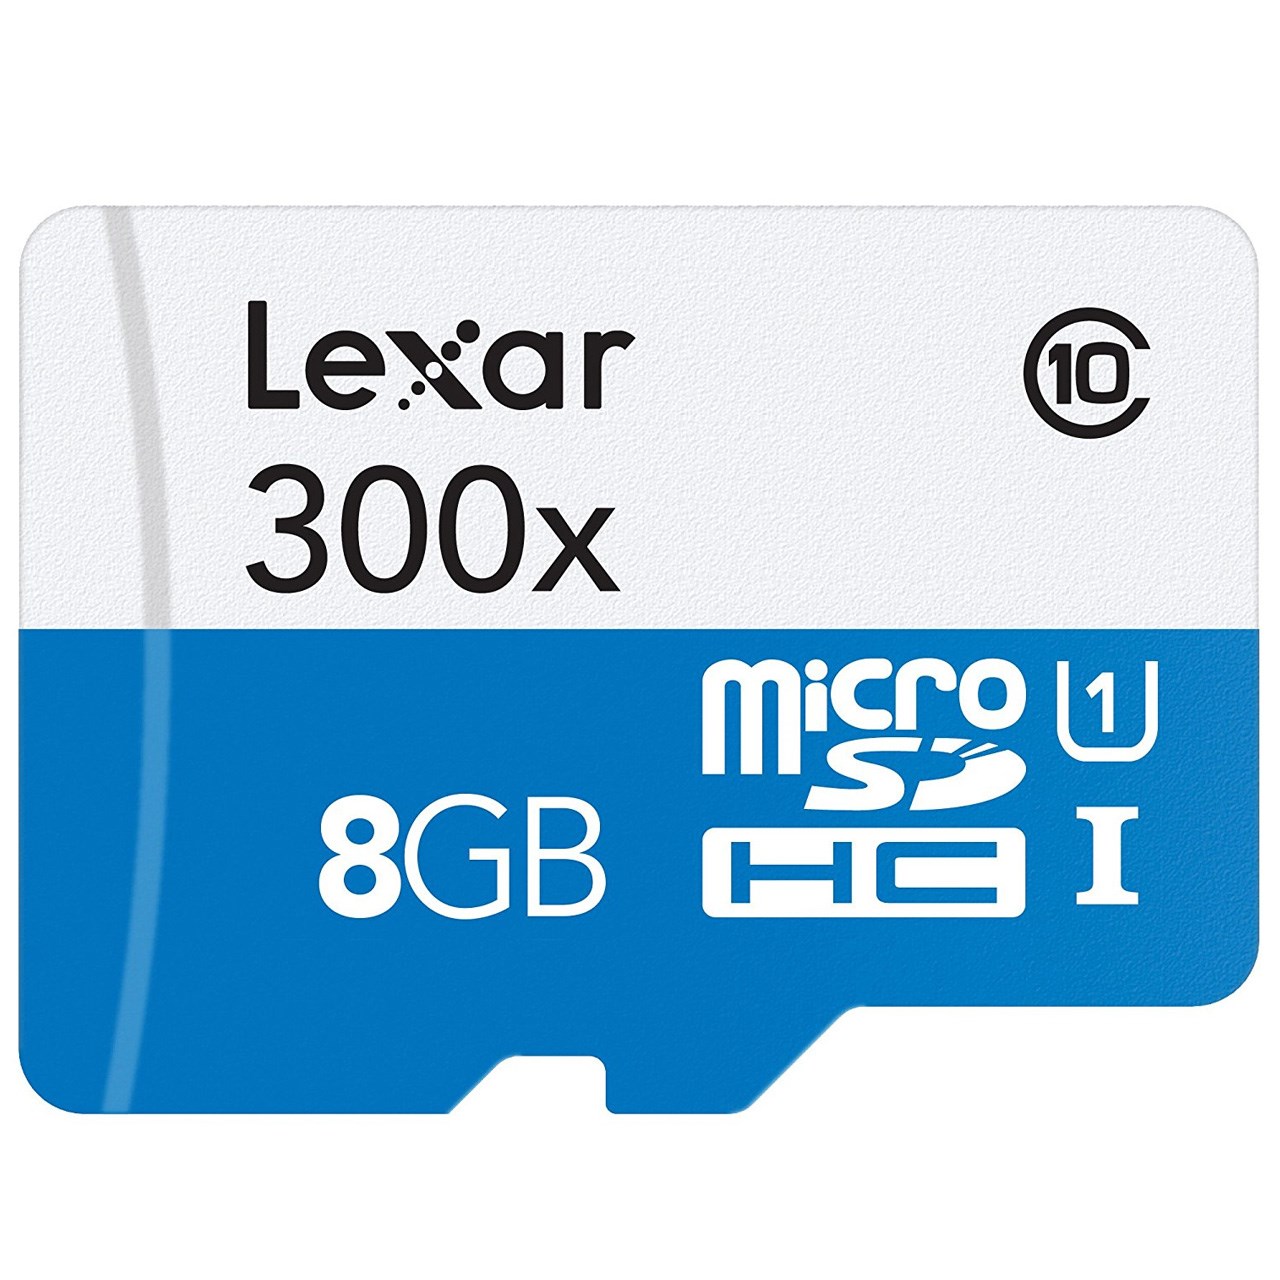 کارت حافظه microSDHC لکسار مدل High-Performance کلاس 10 استاندارد UHS-I U1 سرعت 45MBps ظرفیت 8 گیگابایت